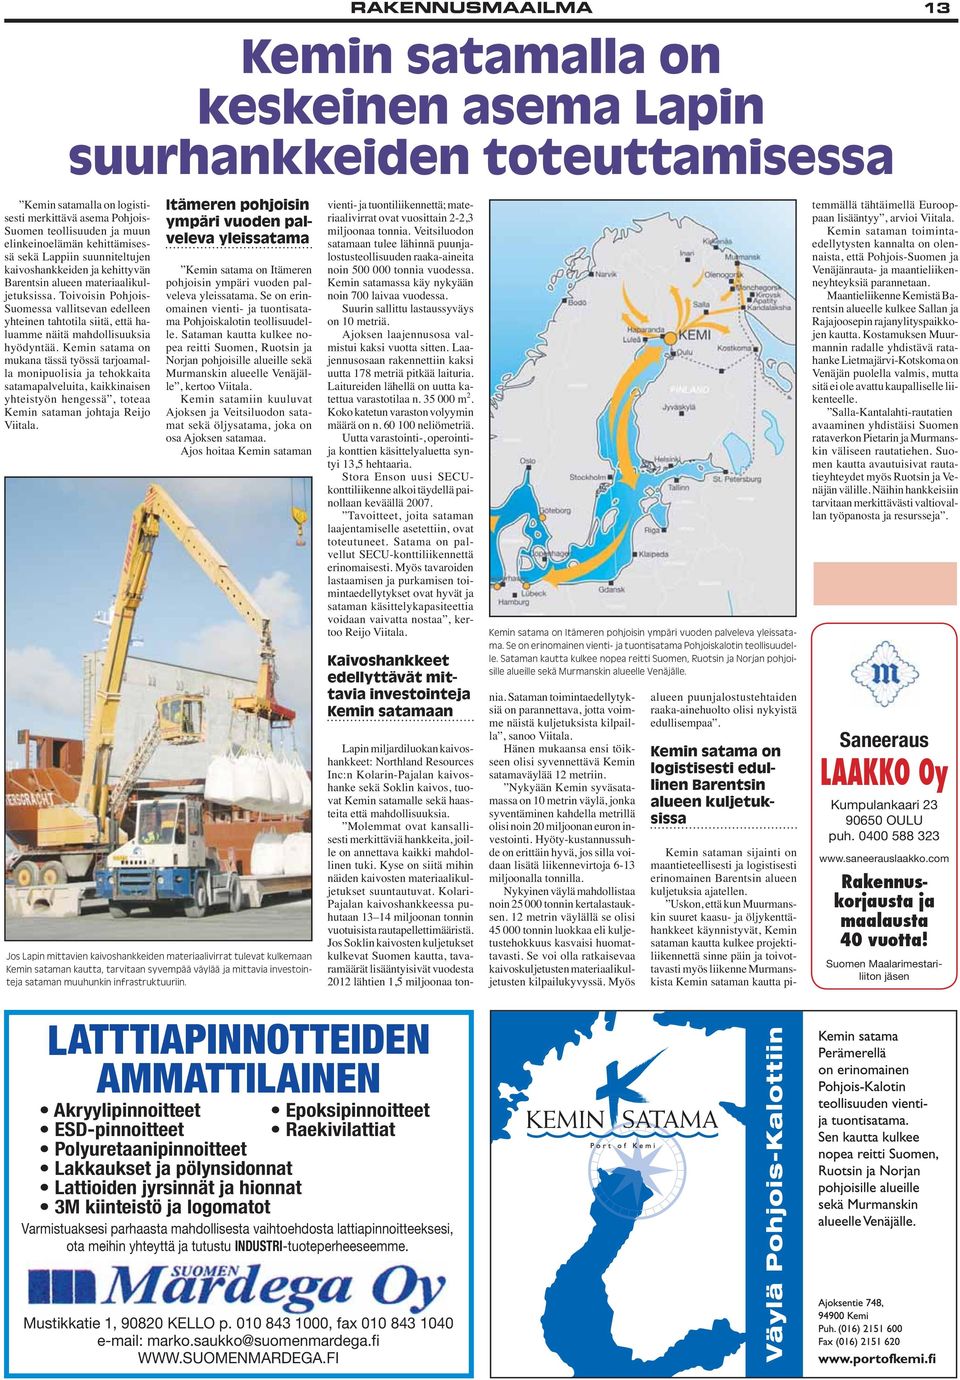 kehittämisessä sekä Lappiin suunniteltujen kaivoshankkeiden ja kehittyvän Barentsin alueen materiaalikuljetuksissa.